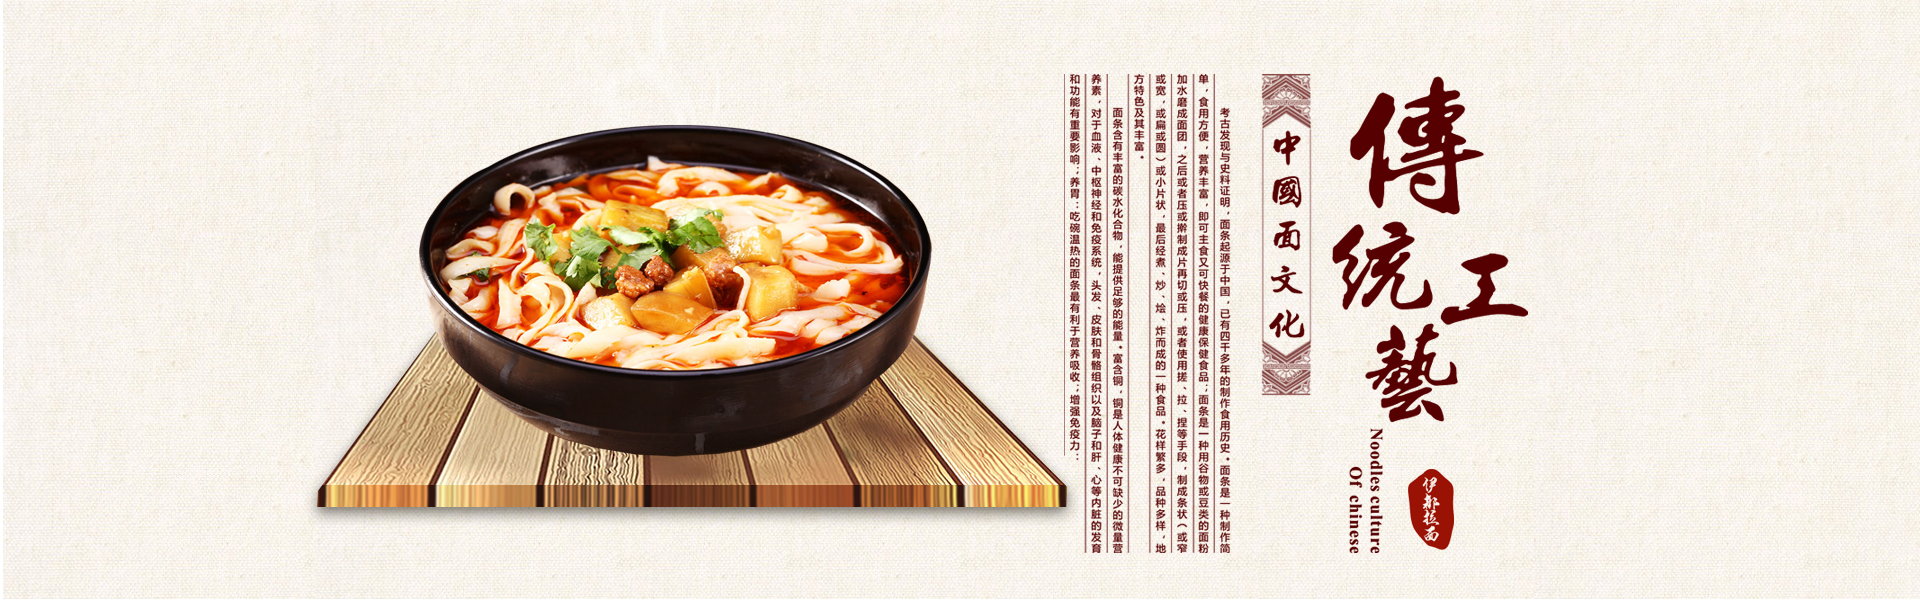 伊都食品参加第7届广州国际餐饮连锁加盟展